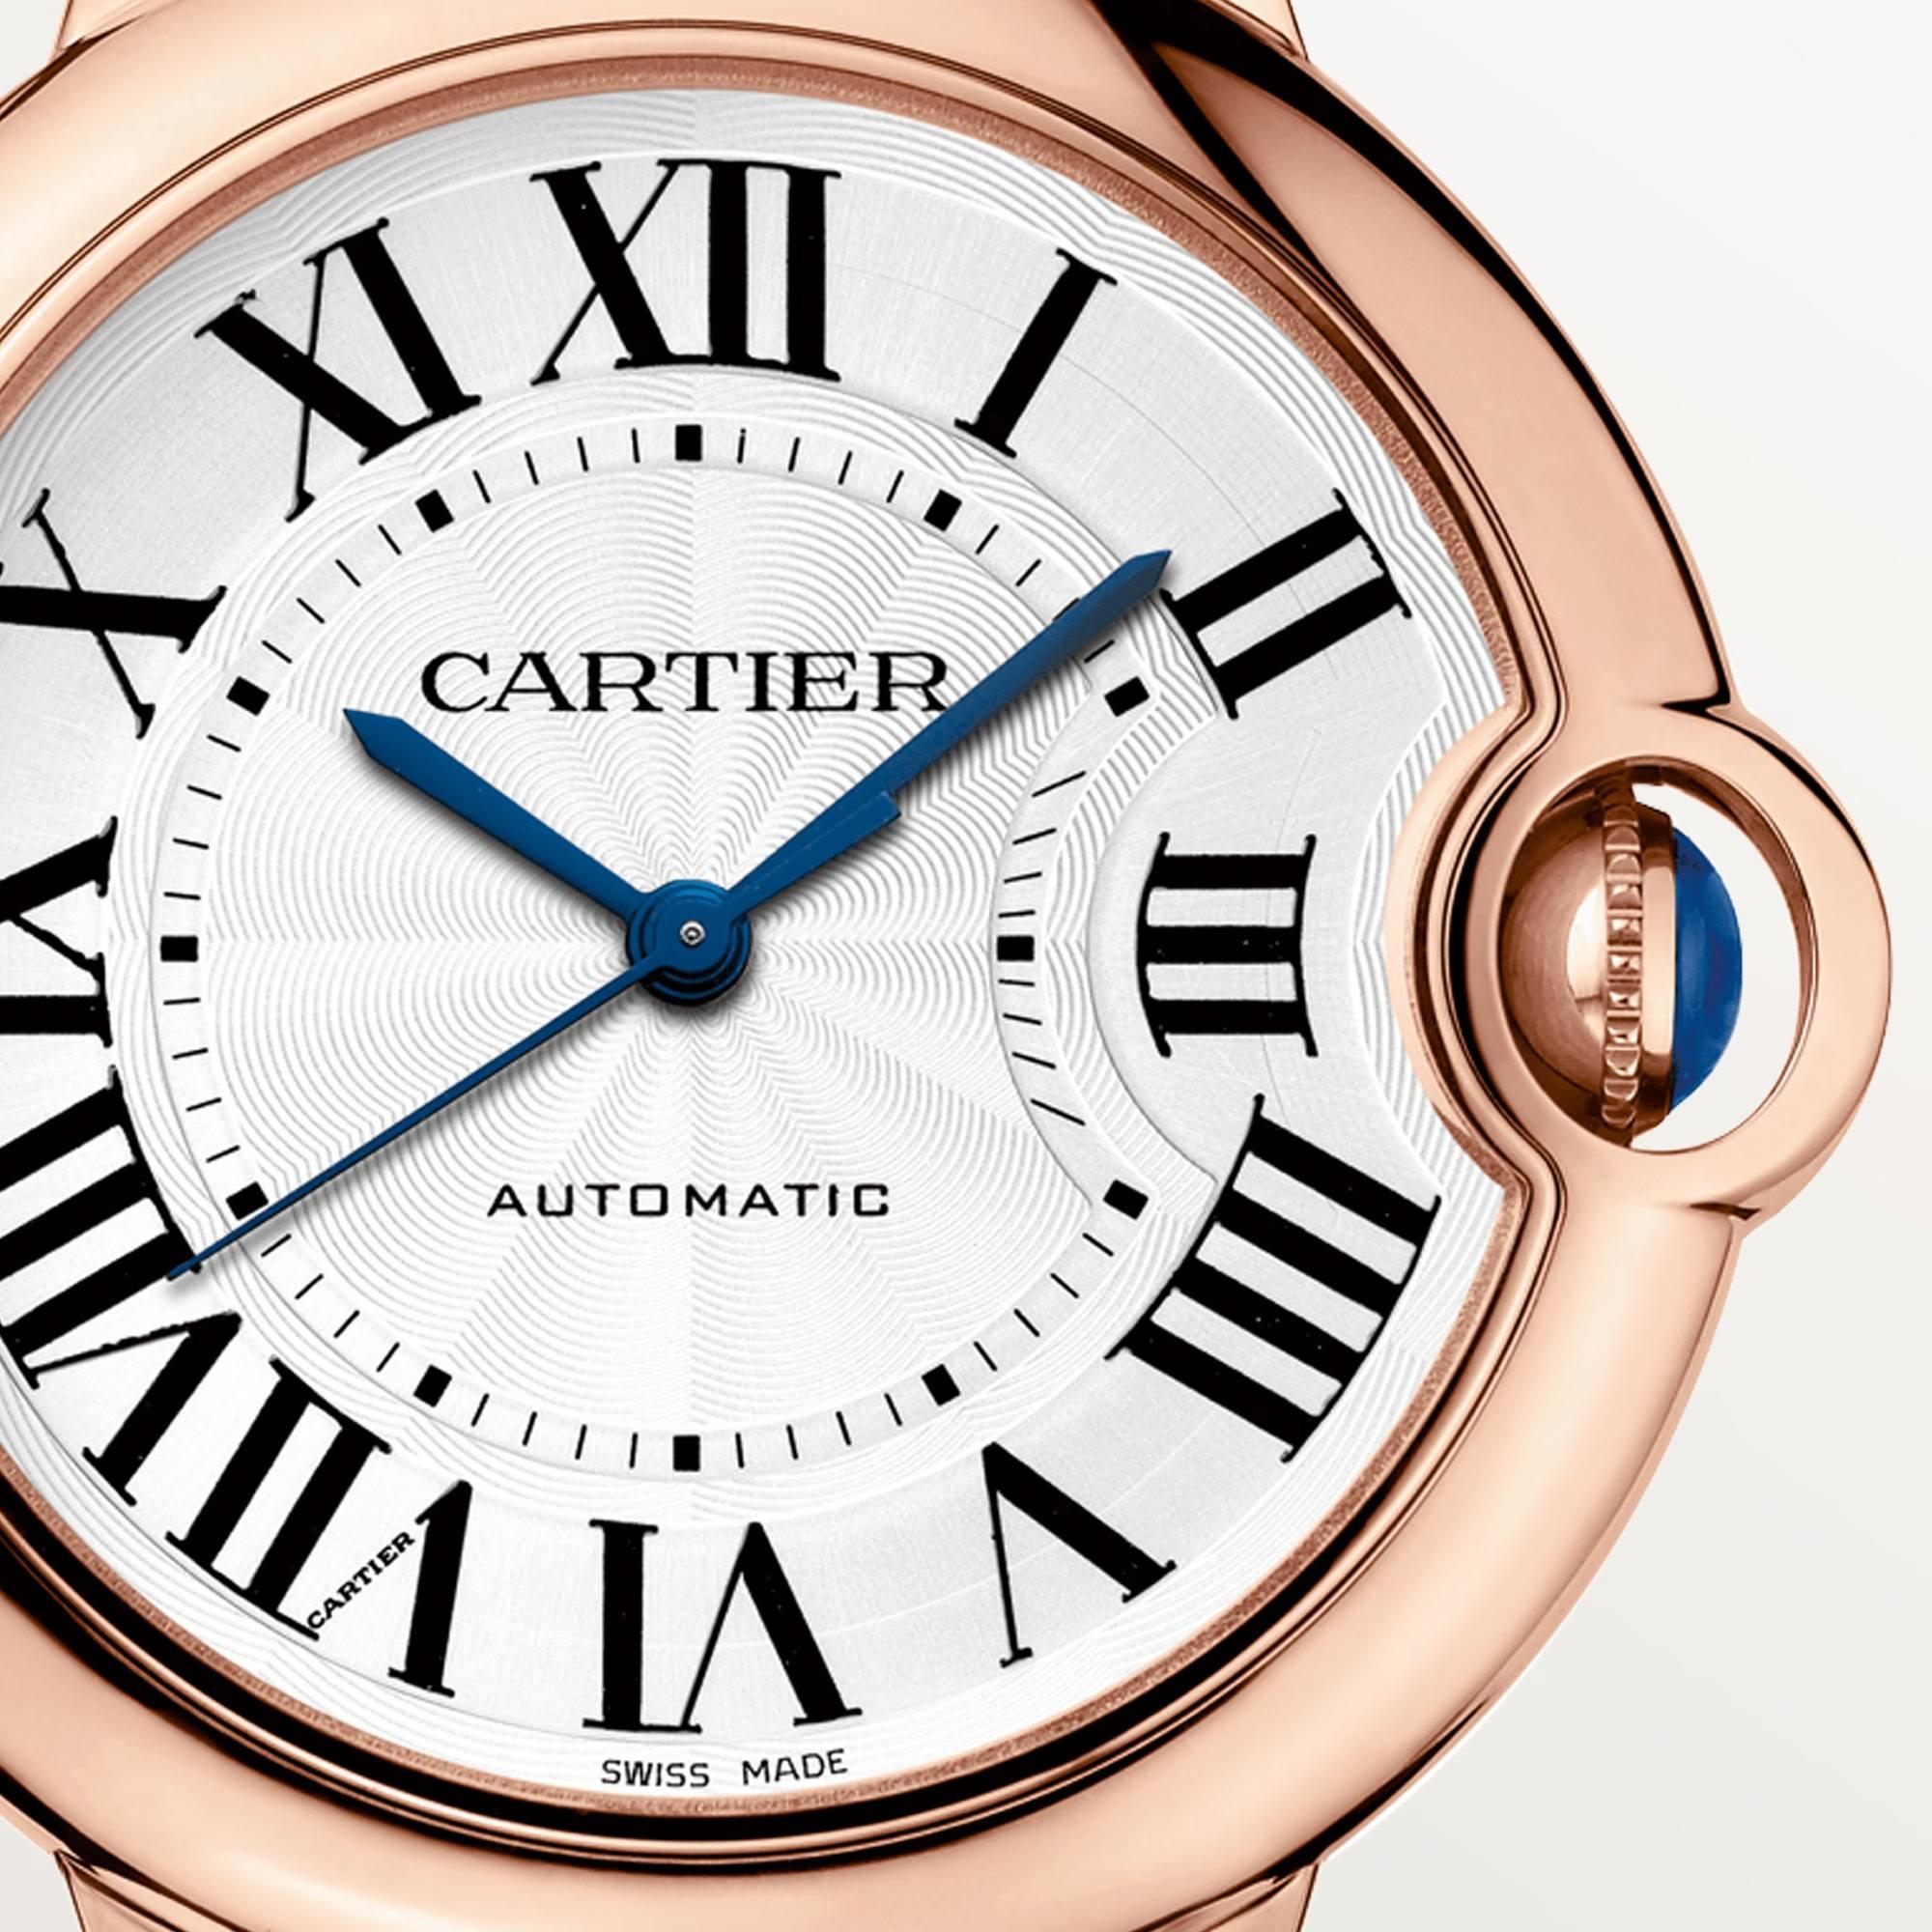 Ballon Blue de Cartier Watch in Rose Gold, 36mm 1